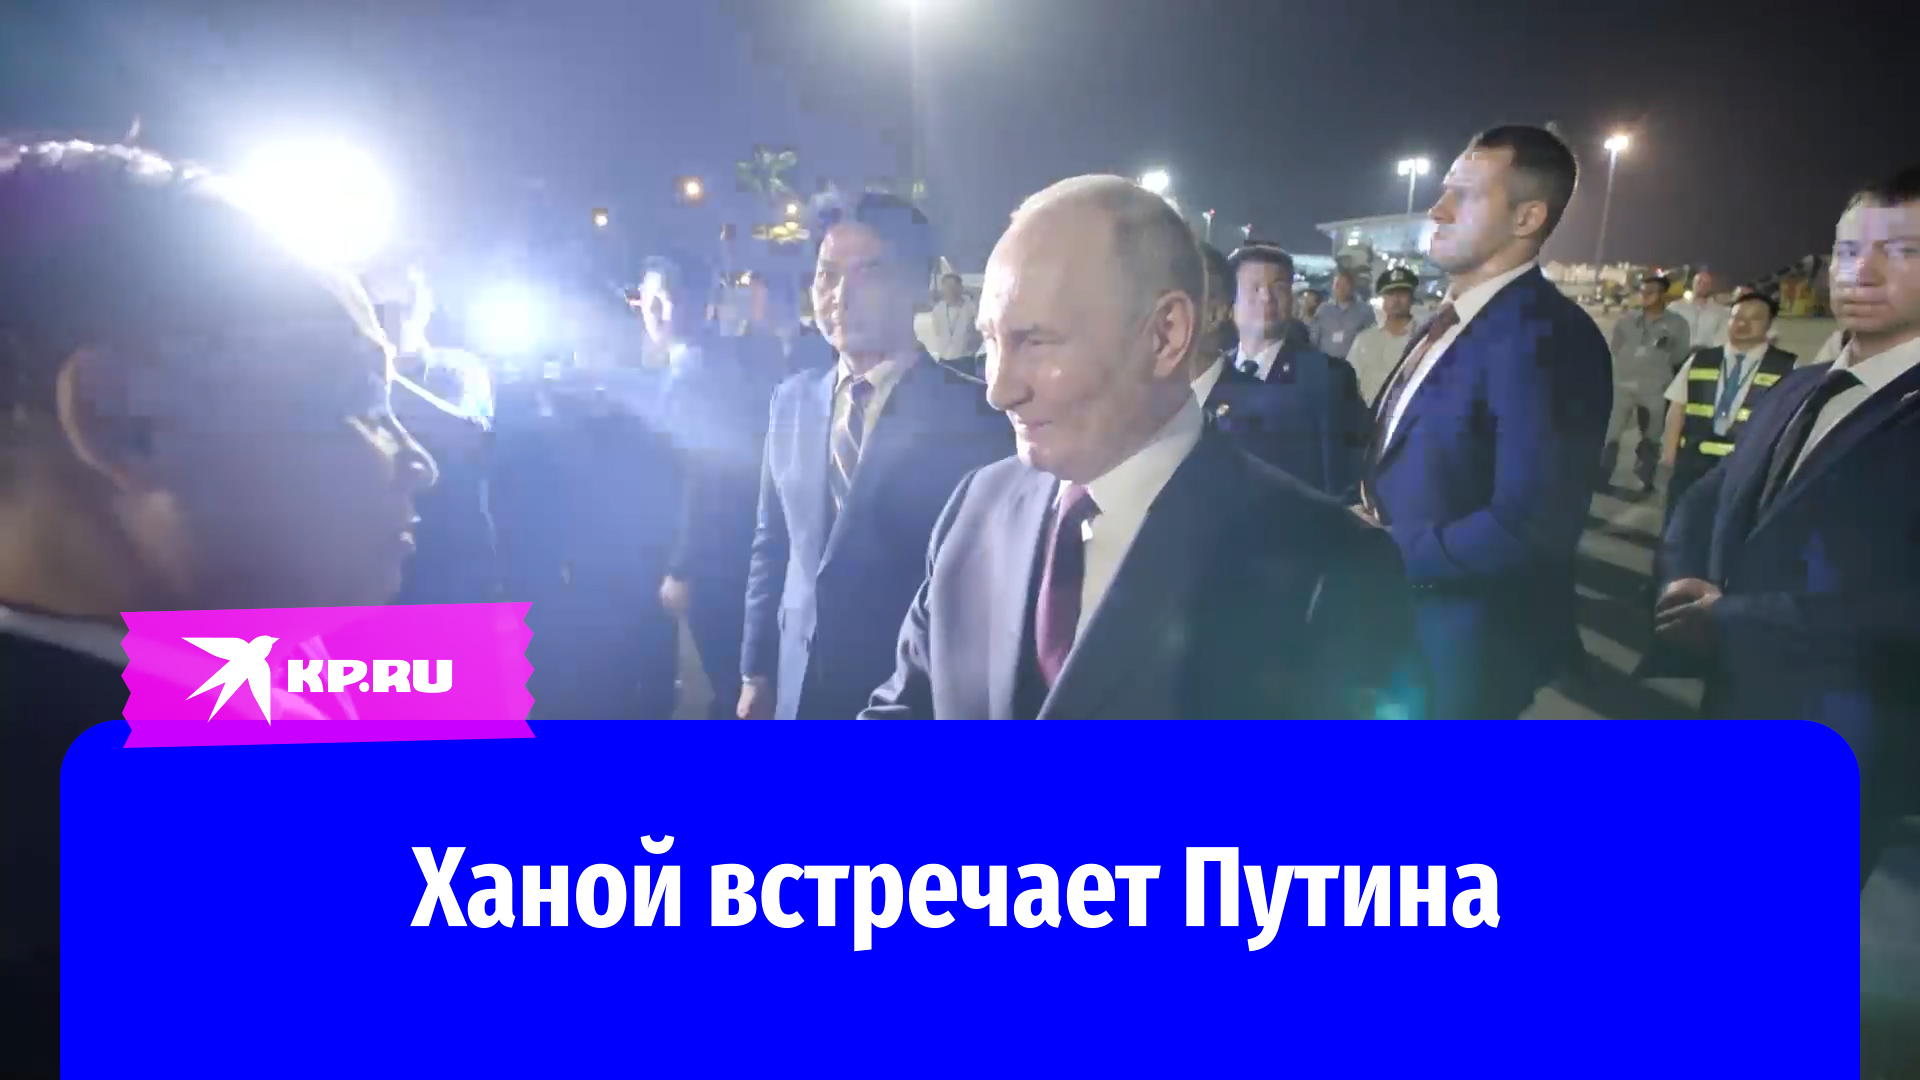 Владимир Путин прибыл в Ханой с государственным визитом